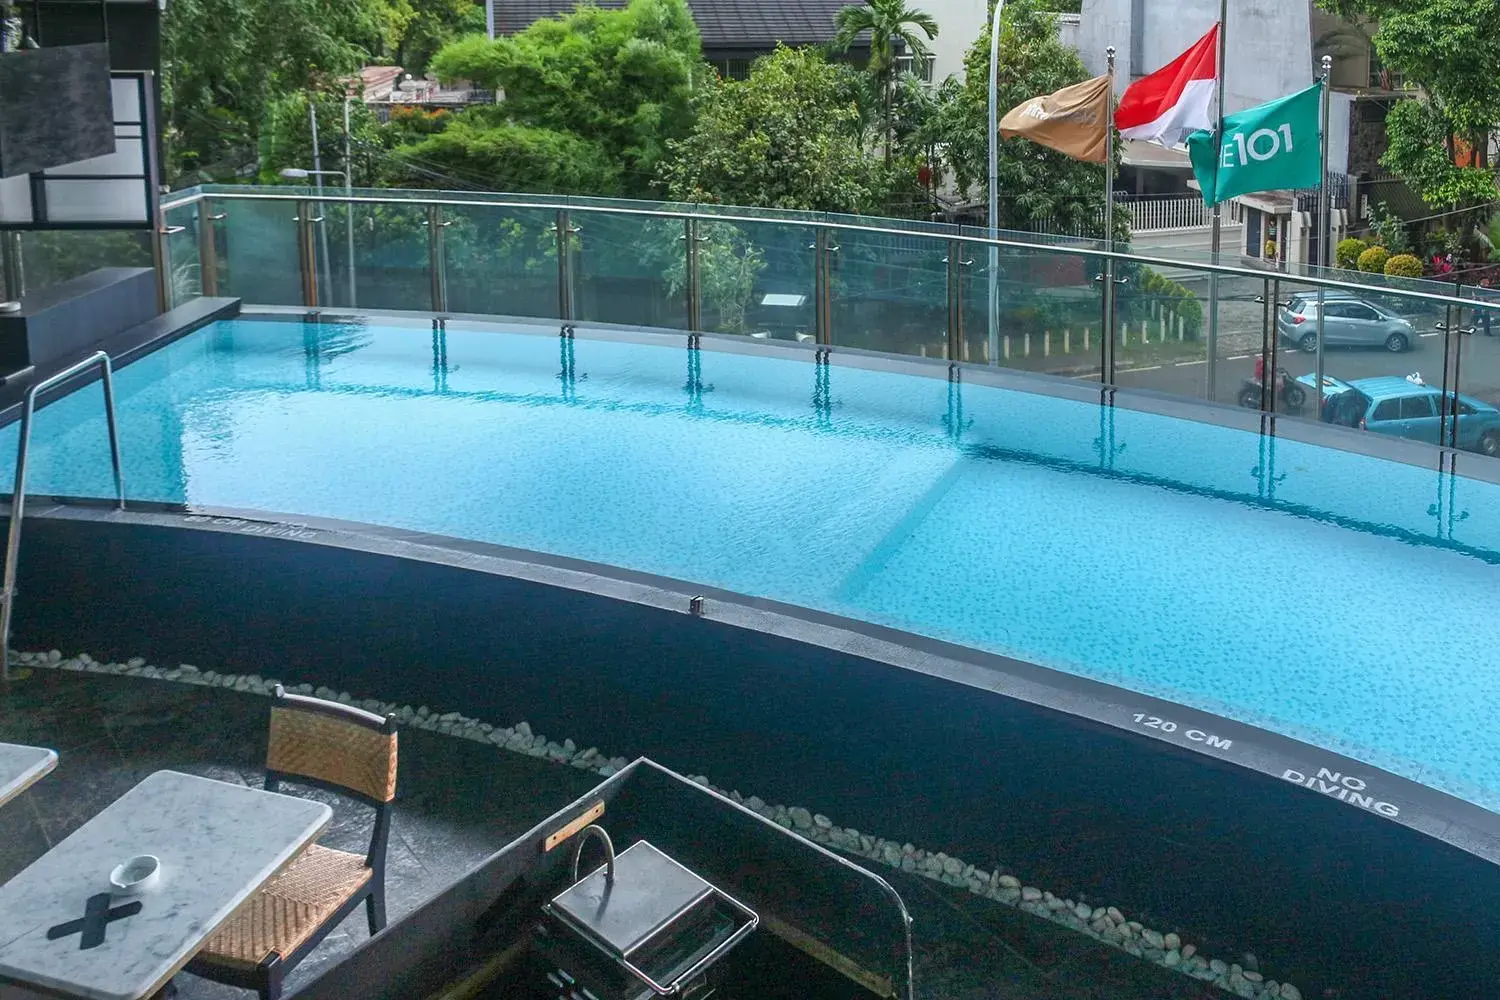 Swimming pool, Pool View in THE 1O1 Jakarta Sedayu Darmawangsa